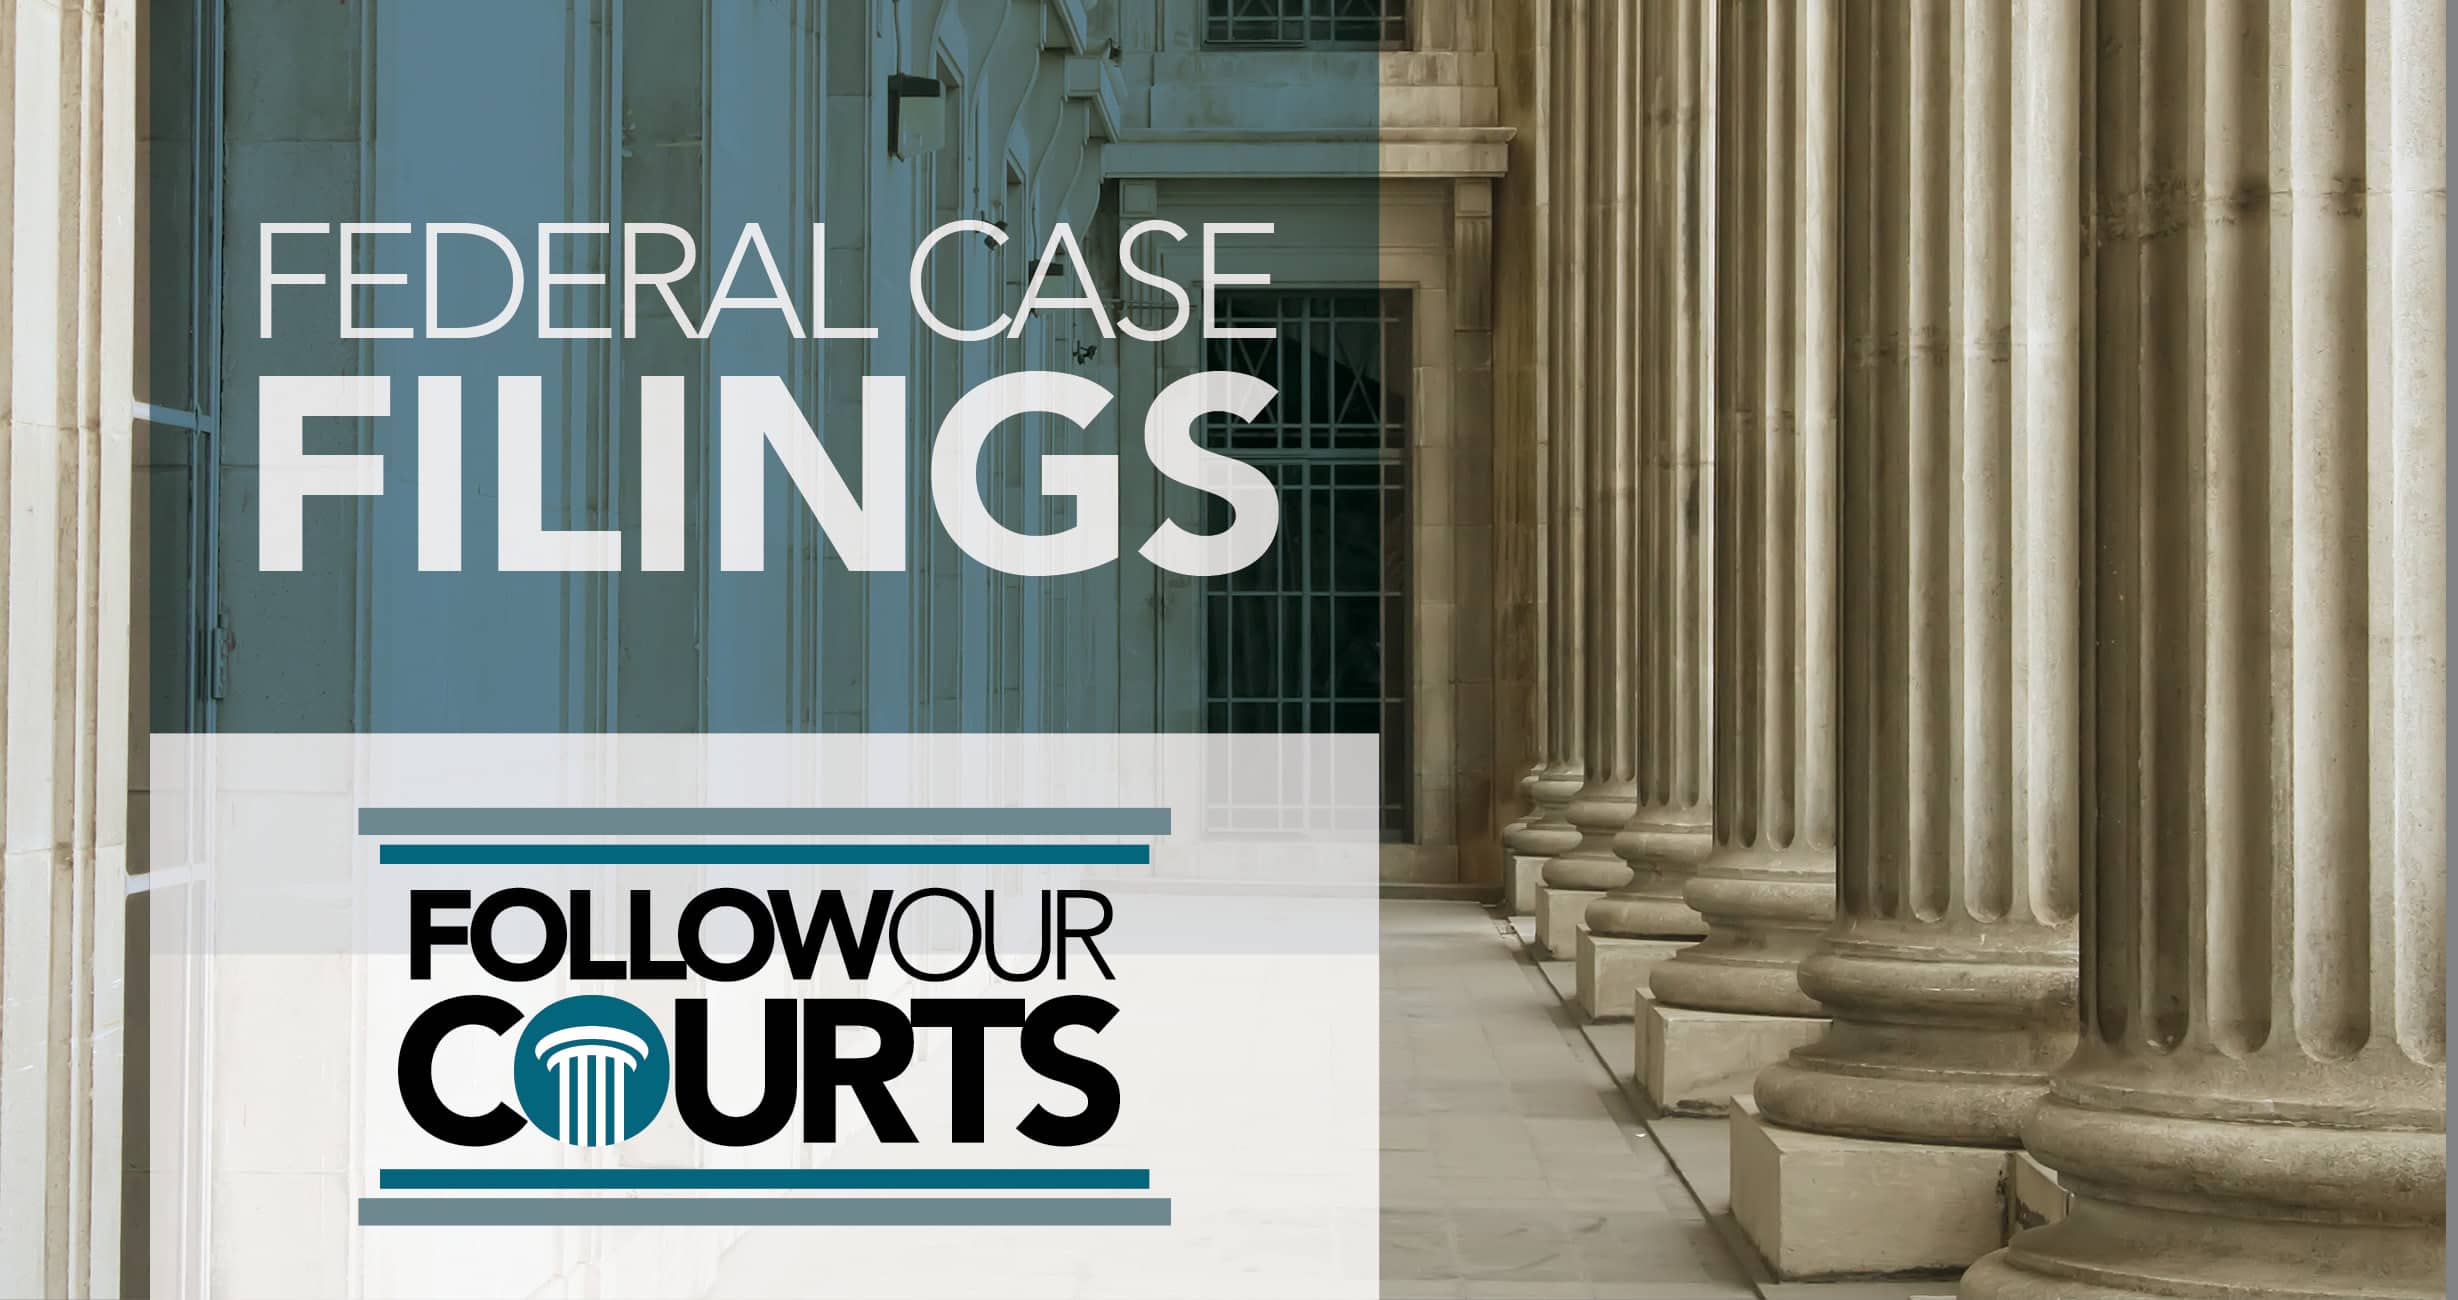 Federal case filings April 24